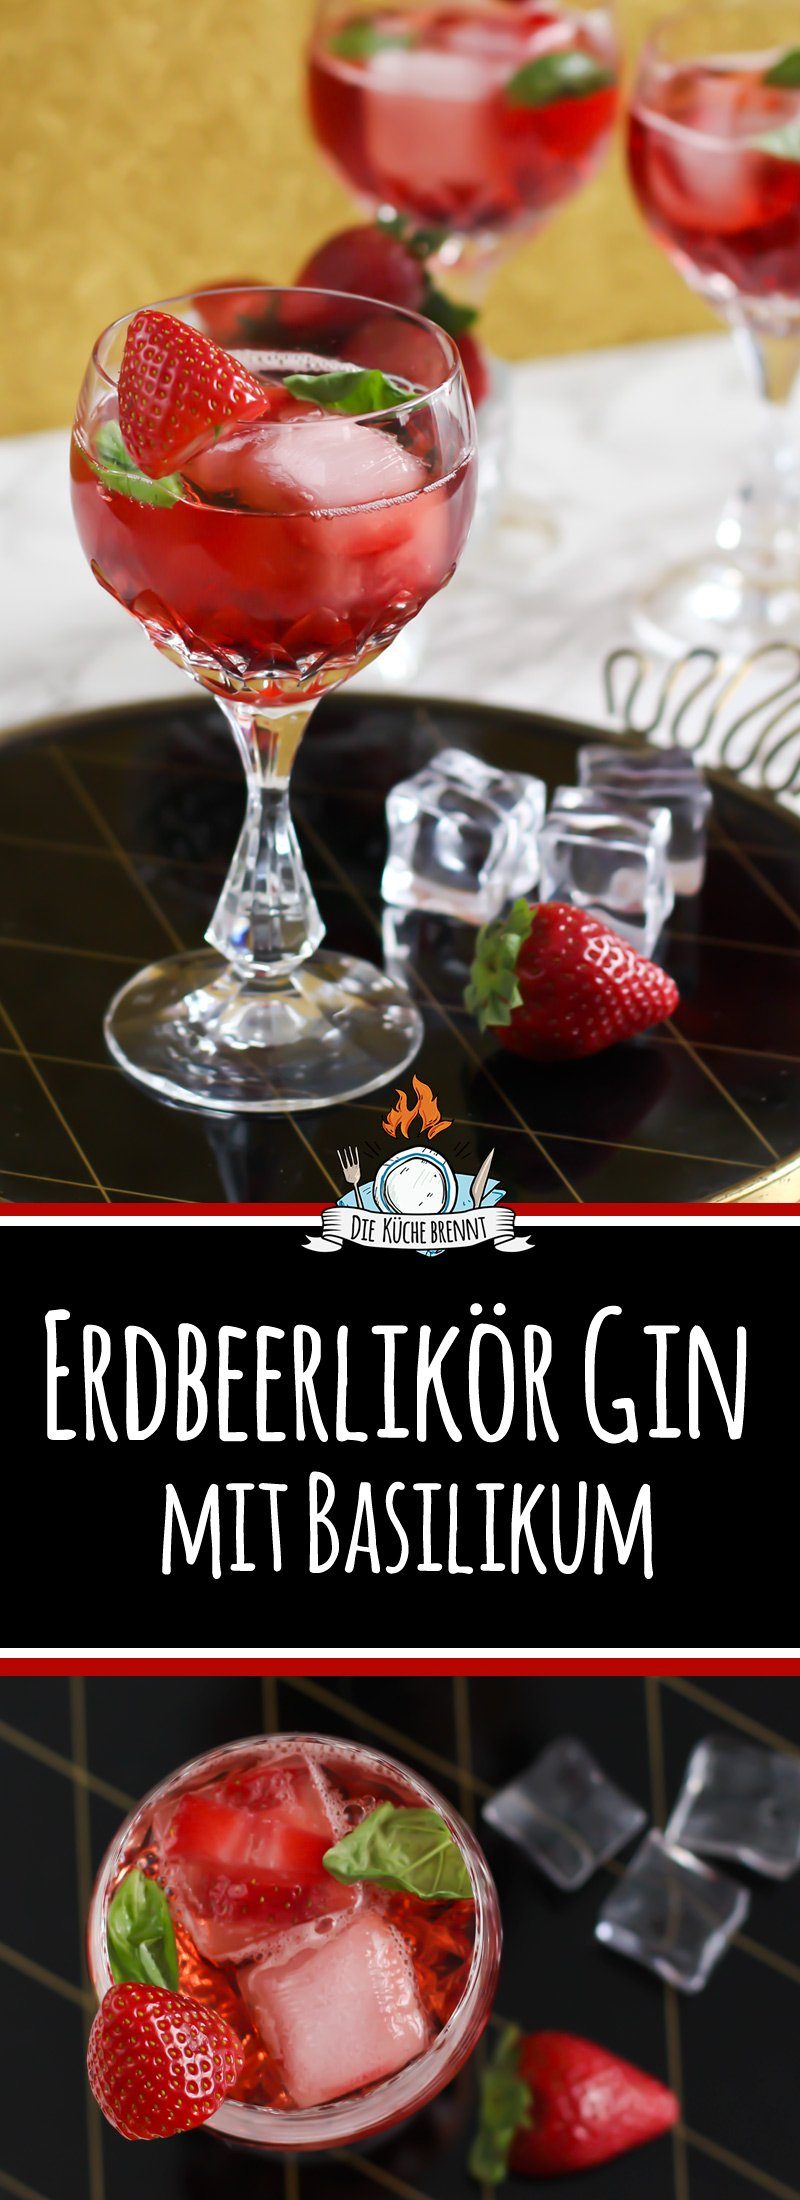 Sommergetränk 2017 Cocktail Gin Tonic mit Erdbeerlikör und Basilikum